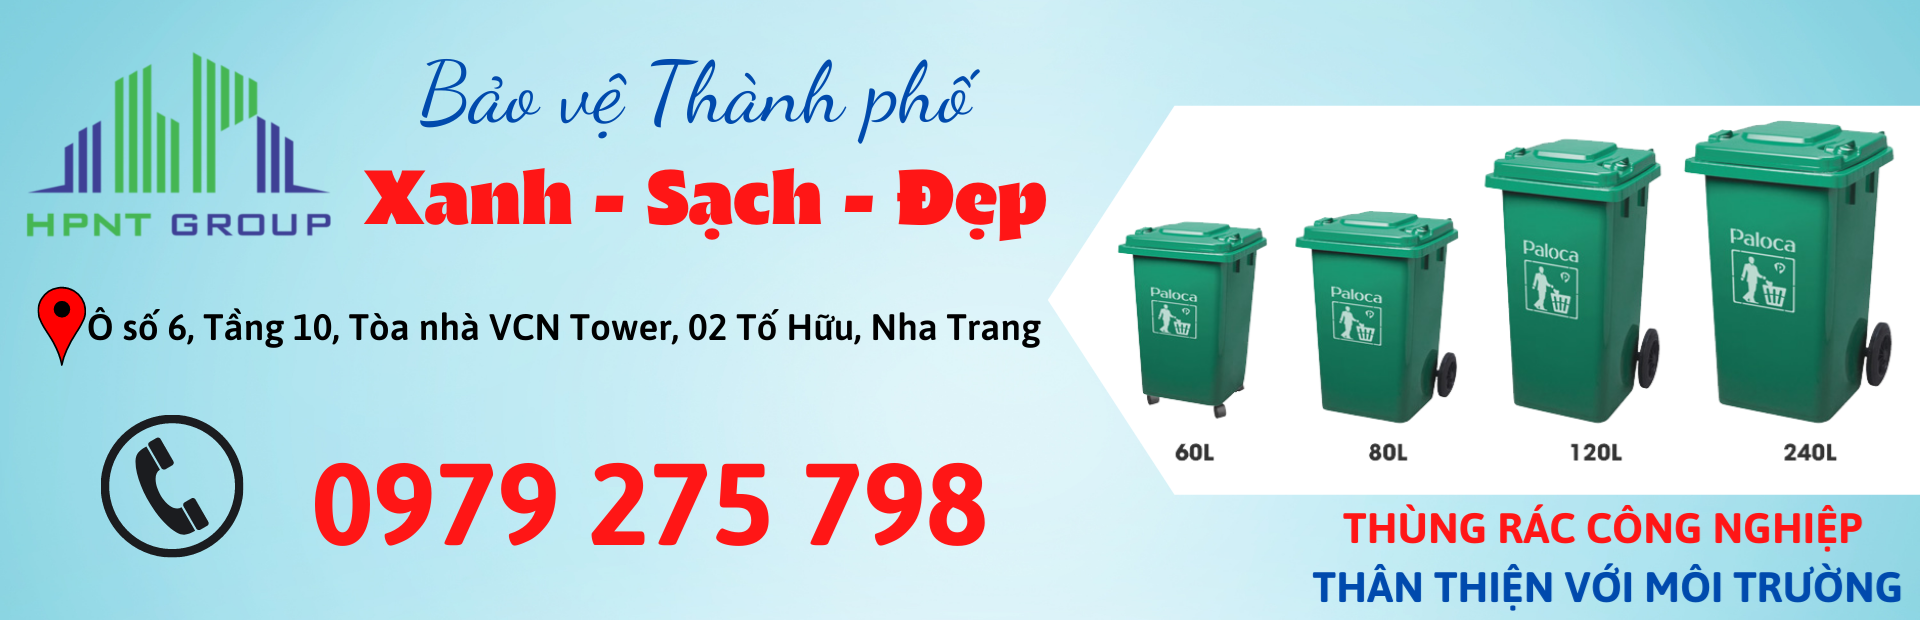 Đại lý cung cấp thùng rác công nghiệp tại Nha Trang